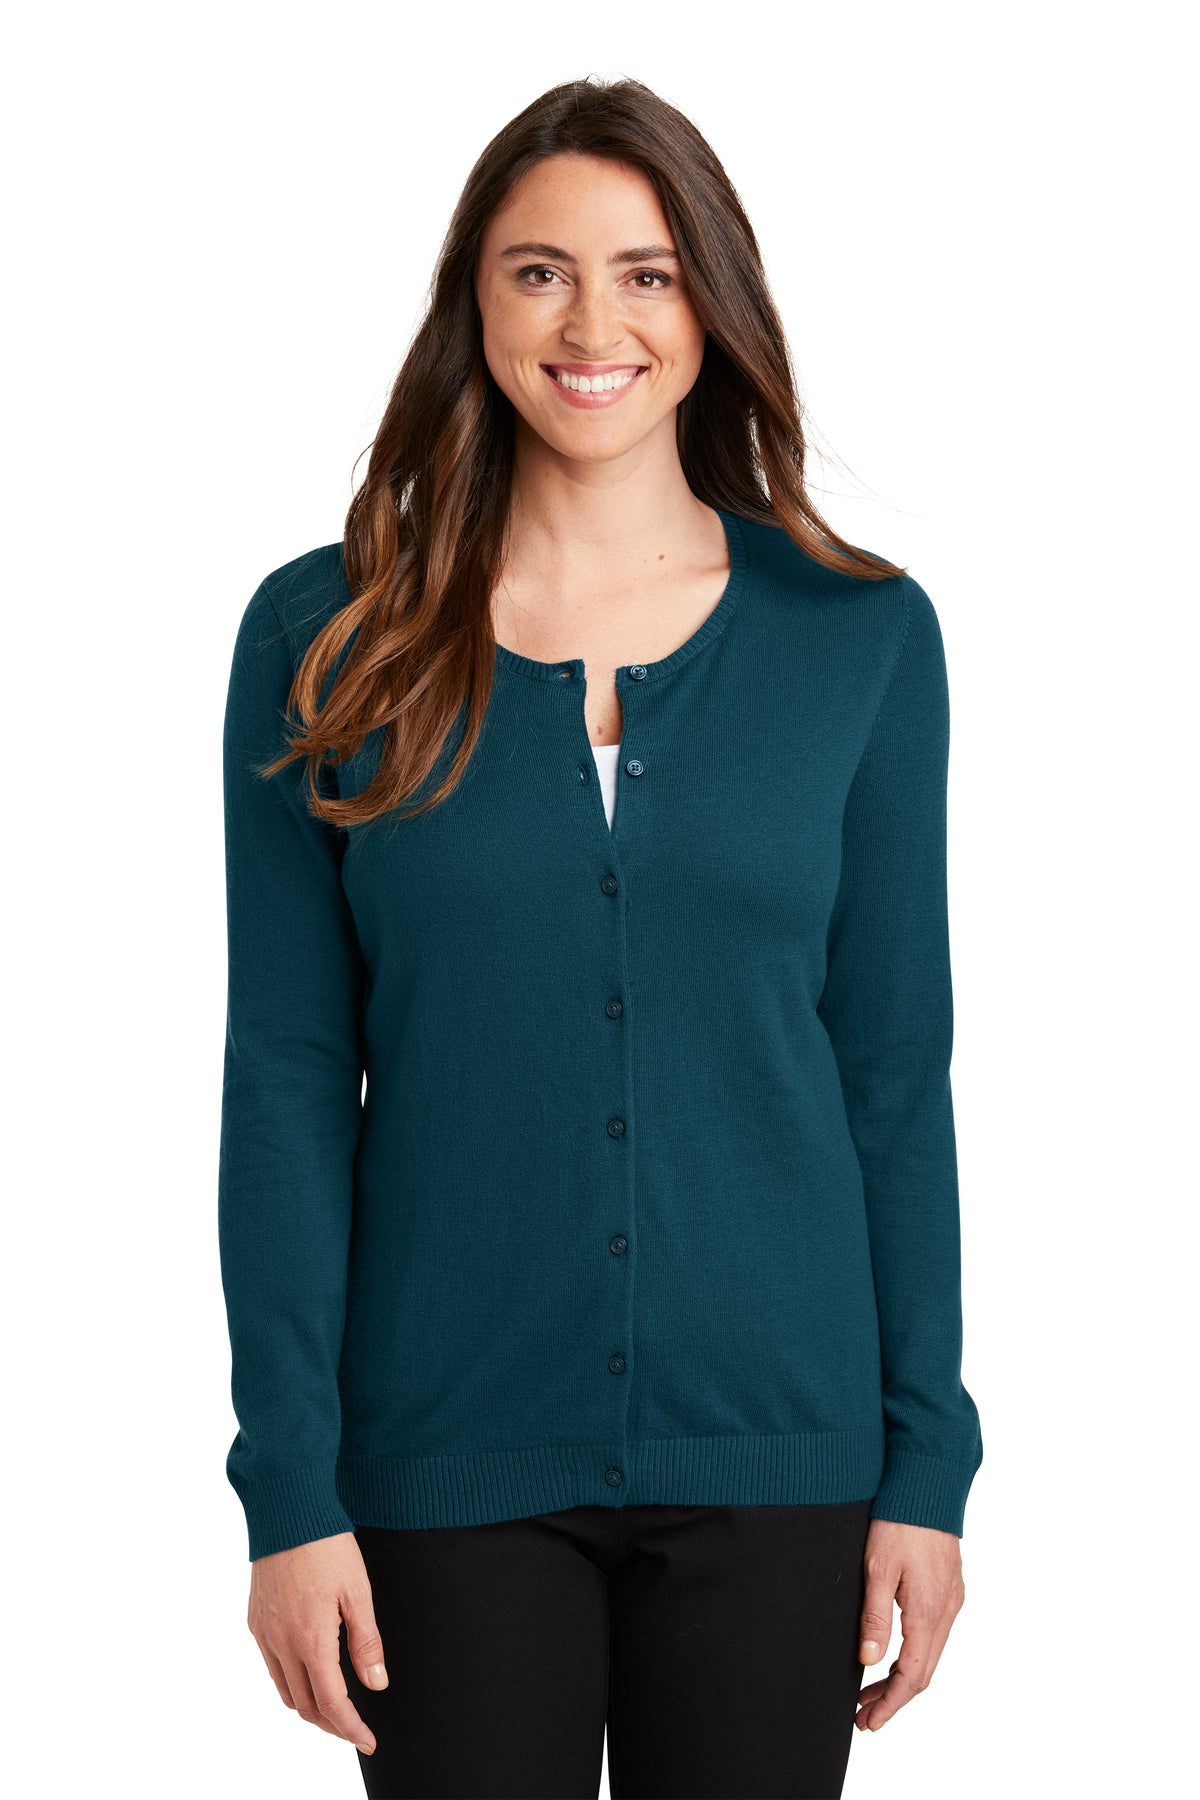 LSW287 Port Authority® Ladies Cardigan Sweater